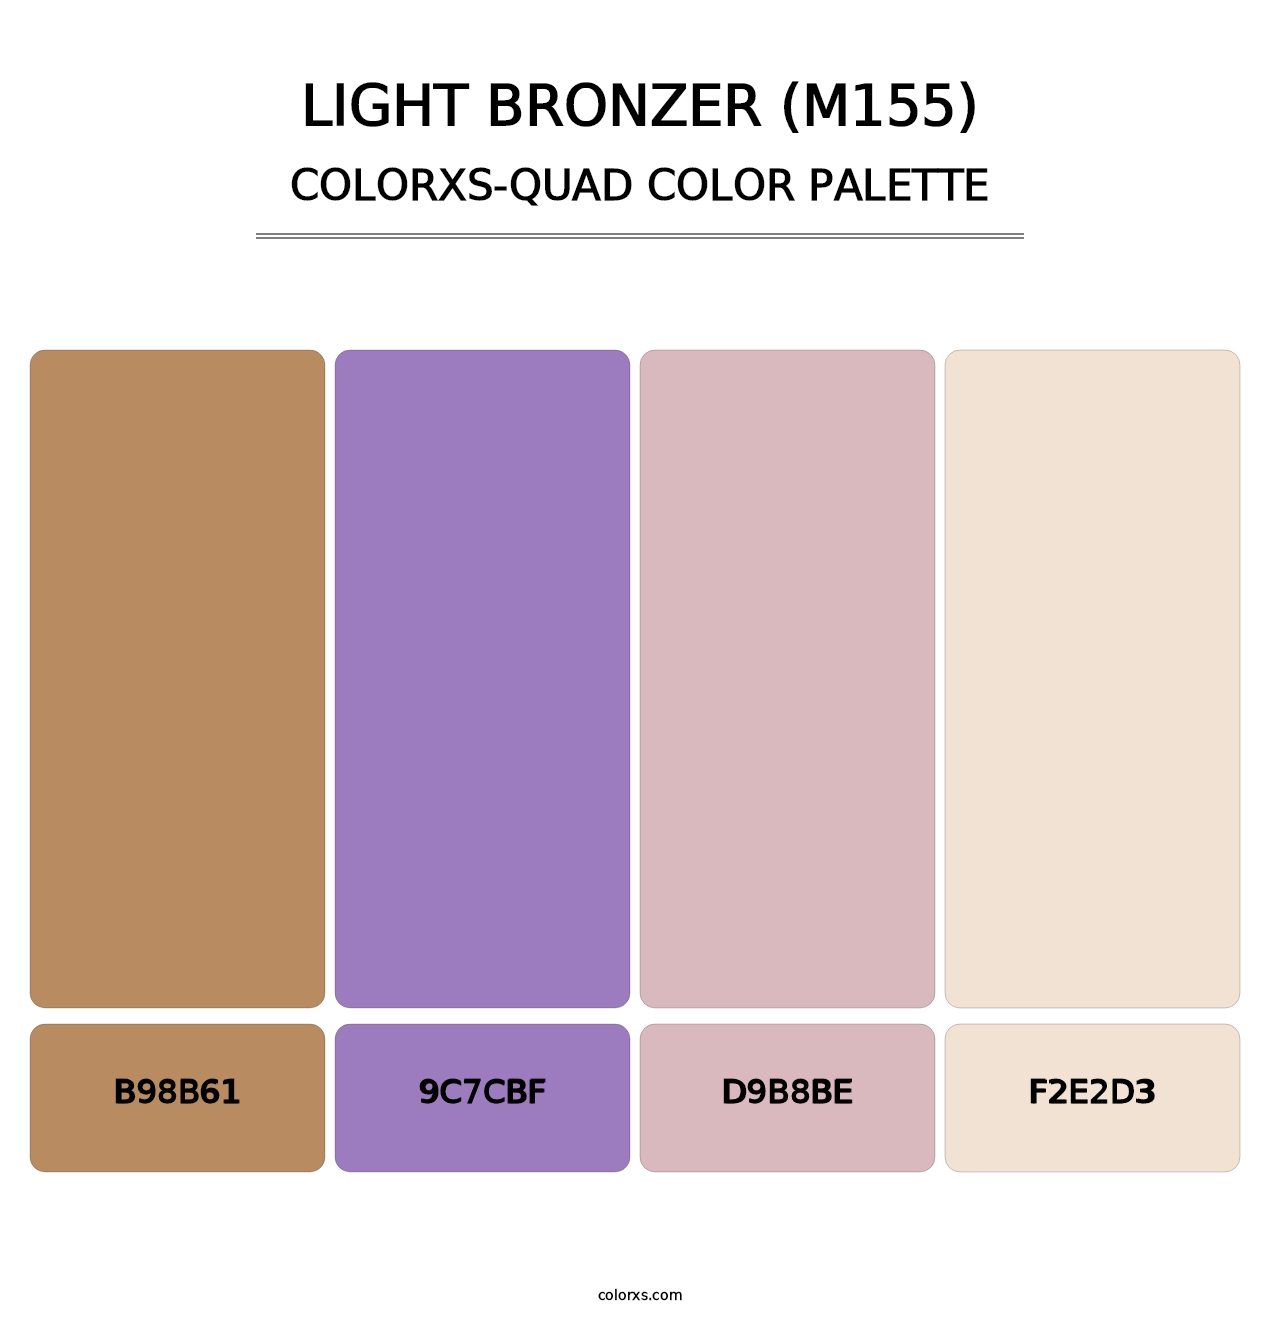 Light Bronzer (M155) - Colorxs Quad Palette